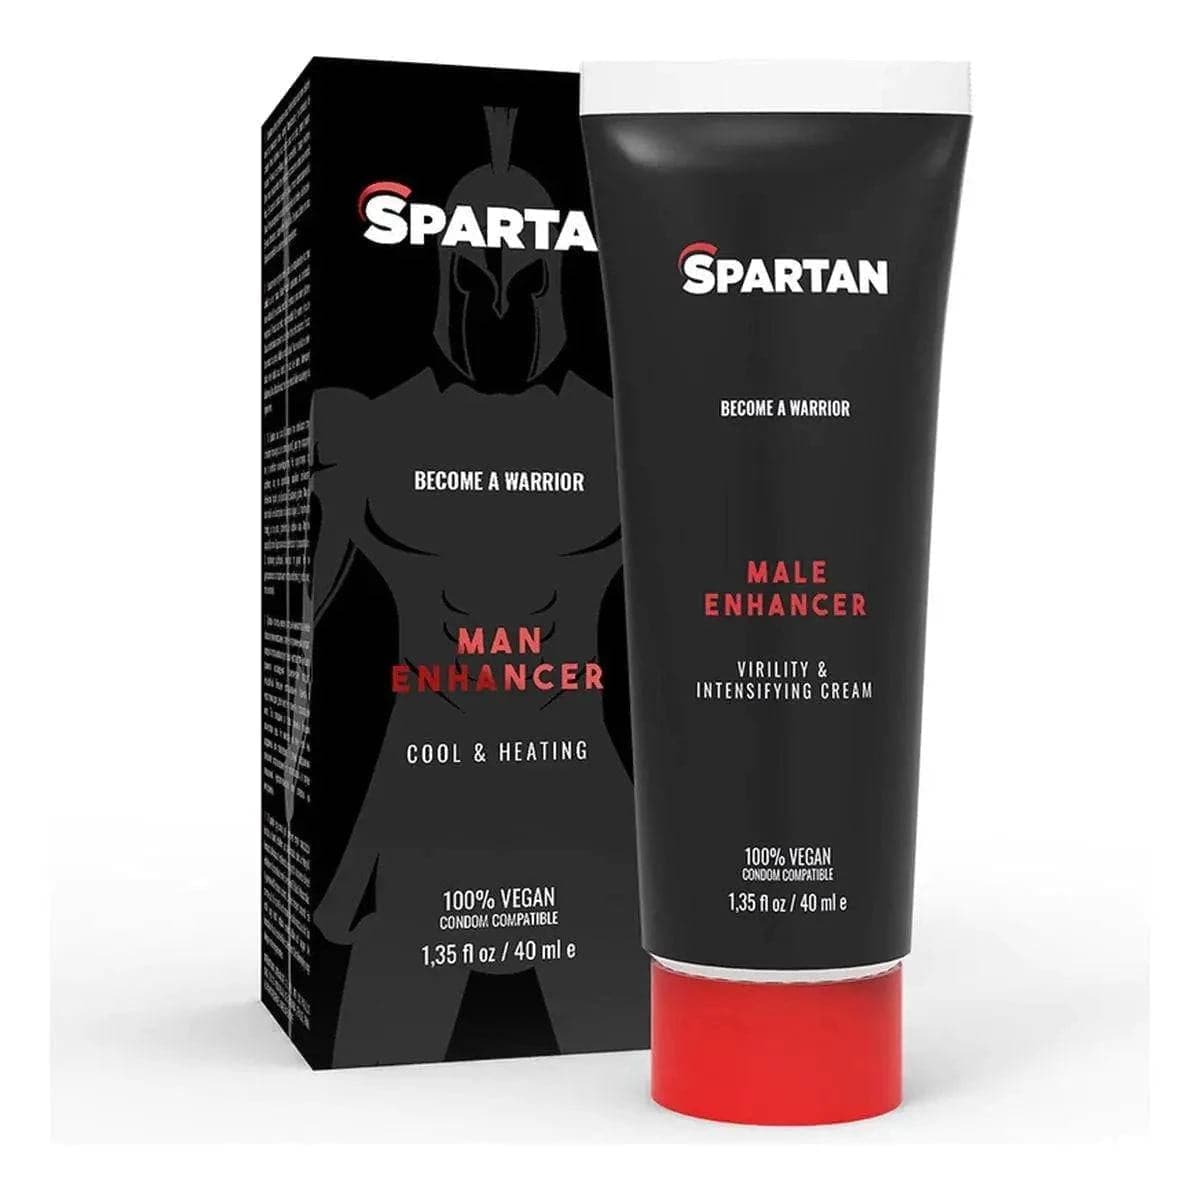 Gel Estimulante Spartan Couple Gel 40ml, Sensação de calor e frio, 100% Vegan (unisexo) - Pérola SexShop